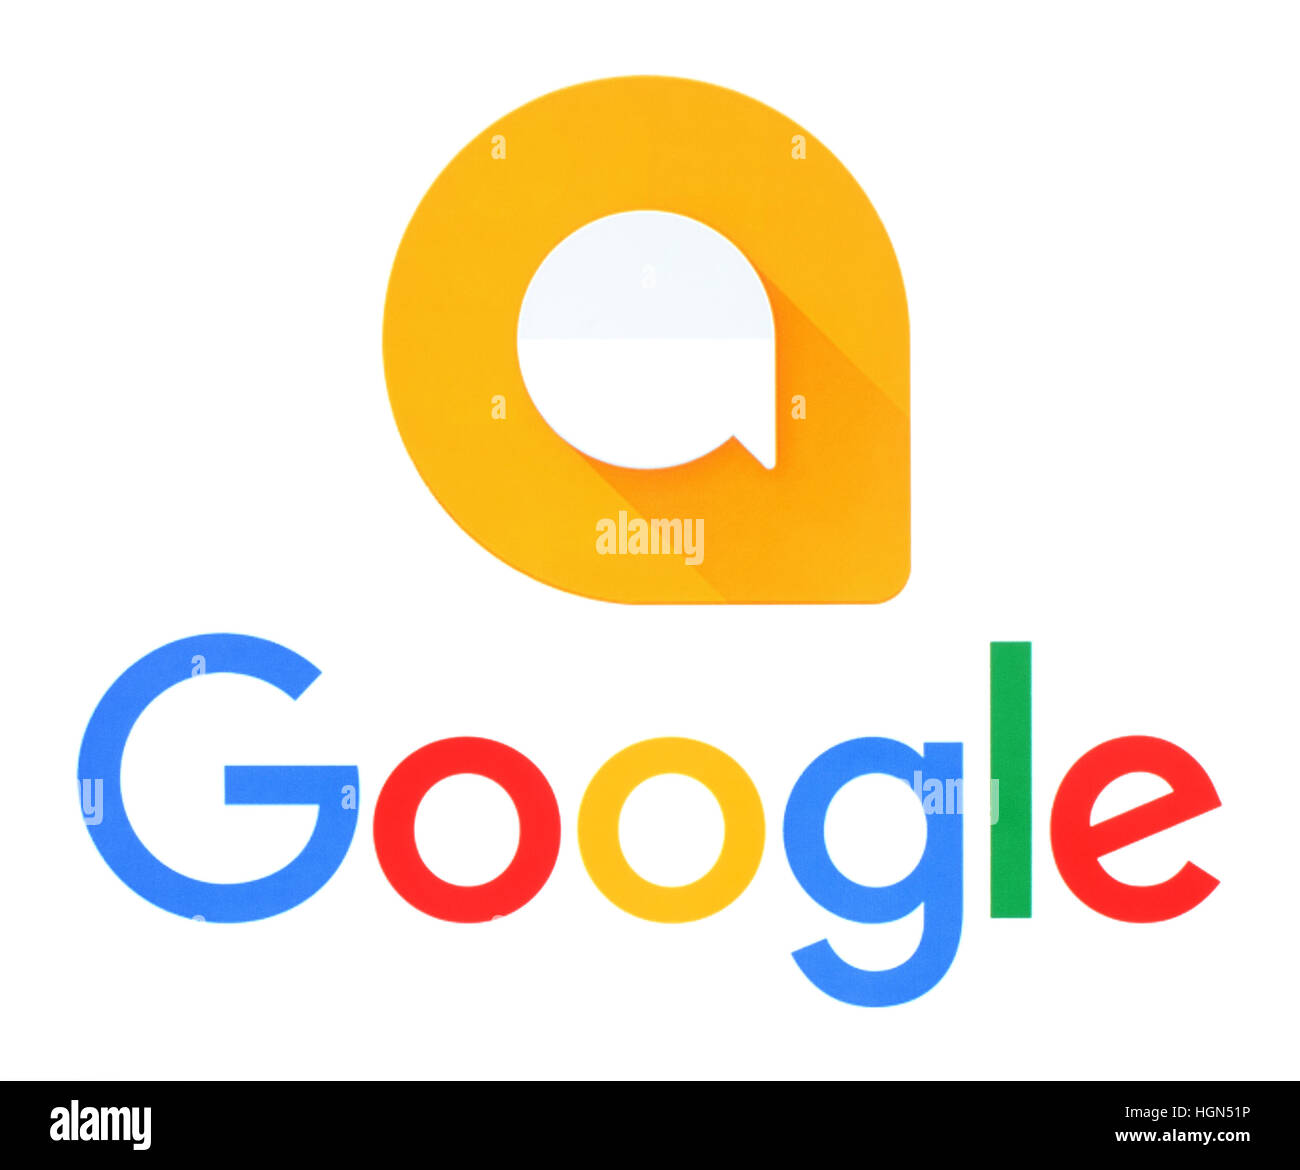 Kiev, Ukraine - le 21 septembre 2016 : Google et Allo logos imprimés sur papier blanc. Allo est une application mobile de messagerie instantanée développé par Google Banque D'Images